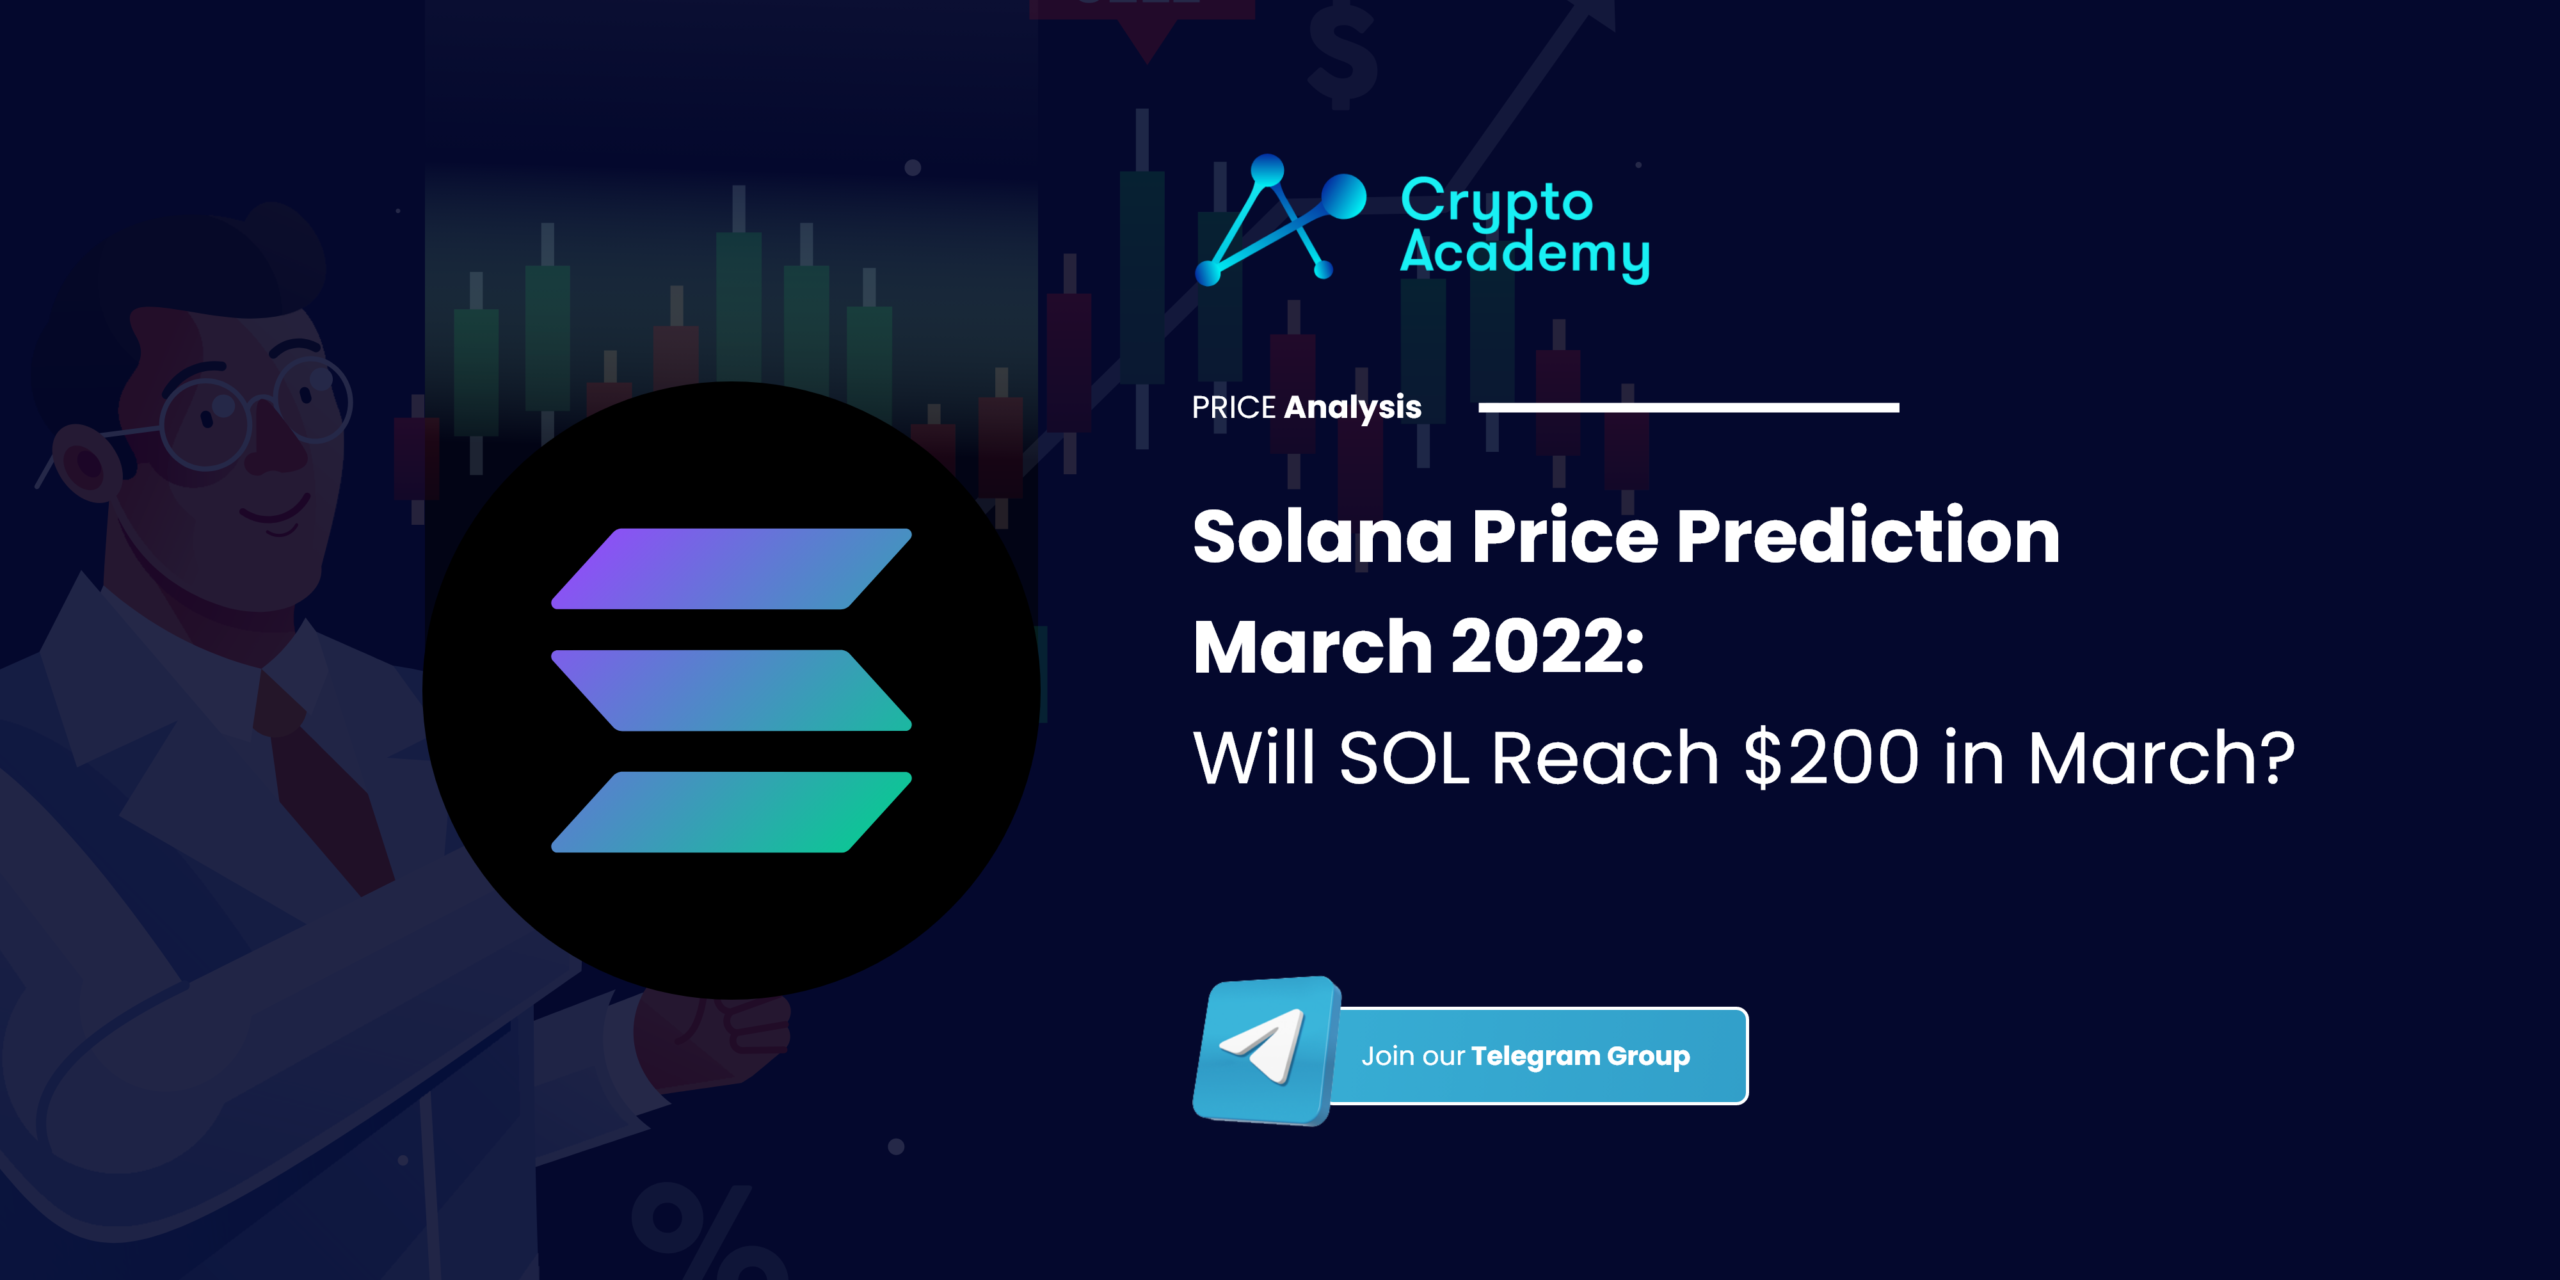 Solana Price Prediction March 2022: Will SOL Reach $200 in March?